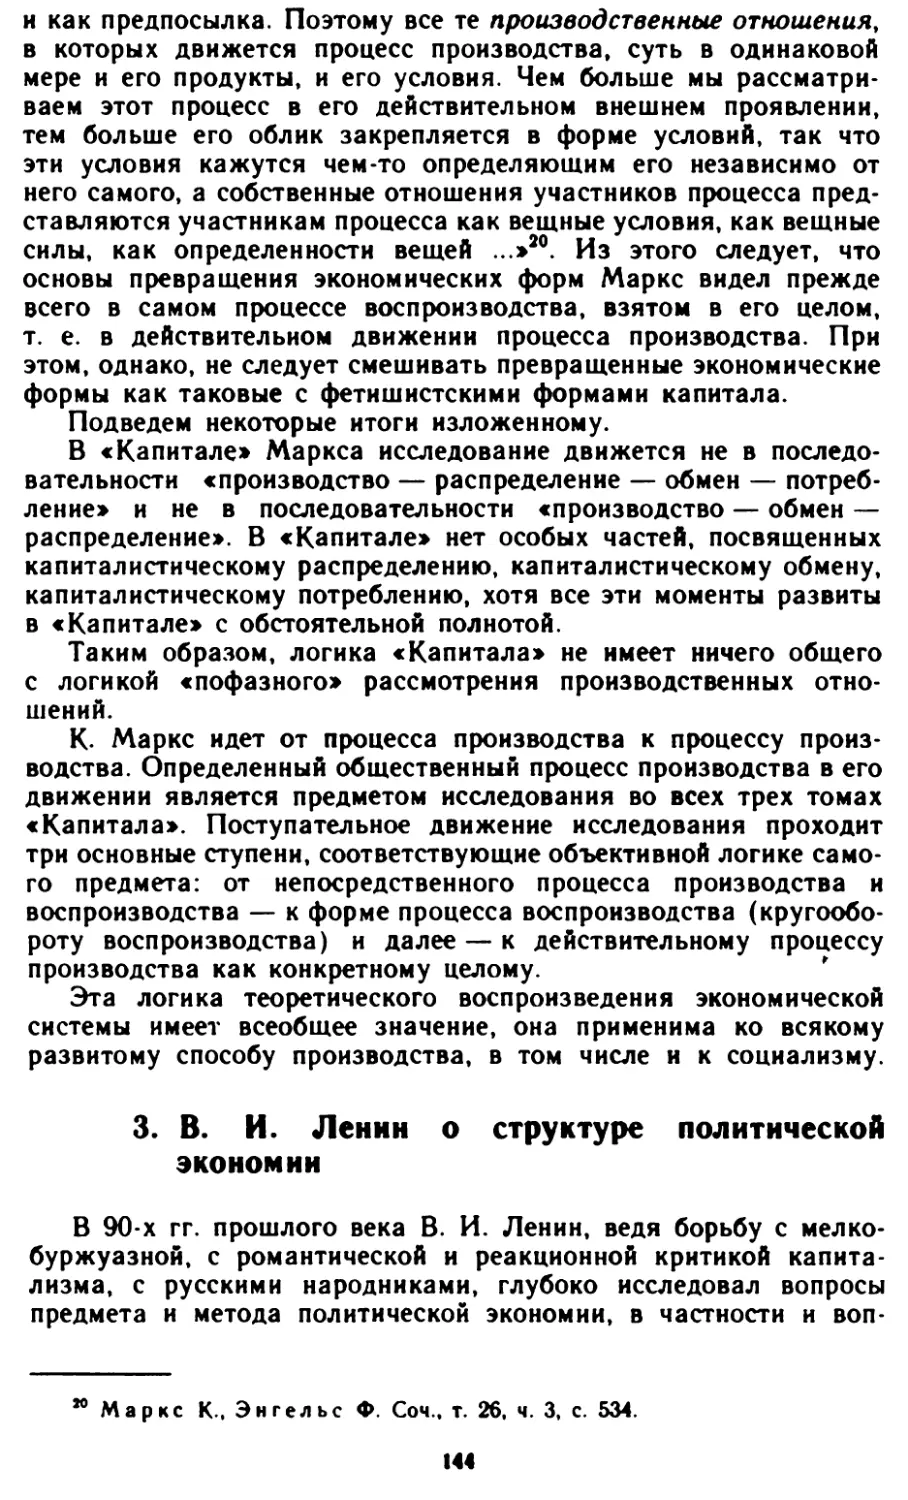 3. В. И. Ленин о структуре политической экономии